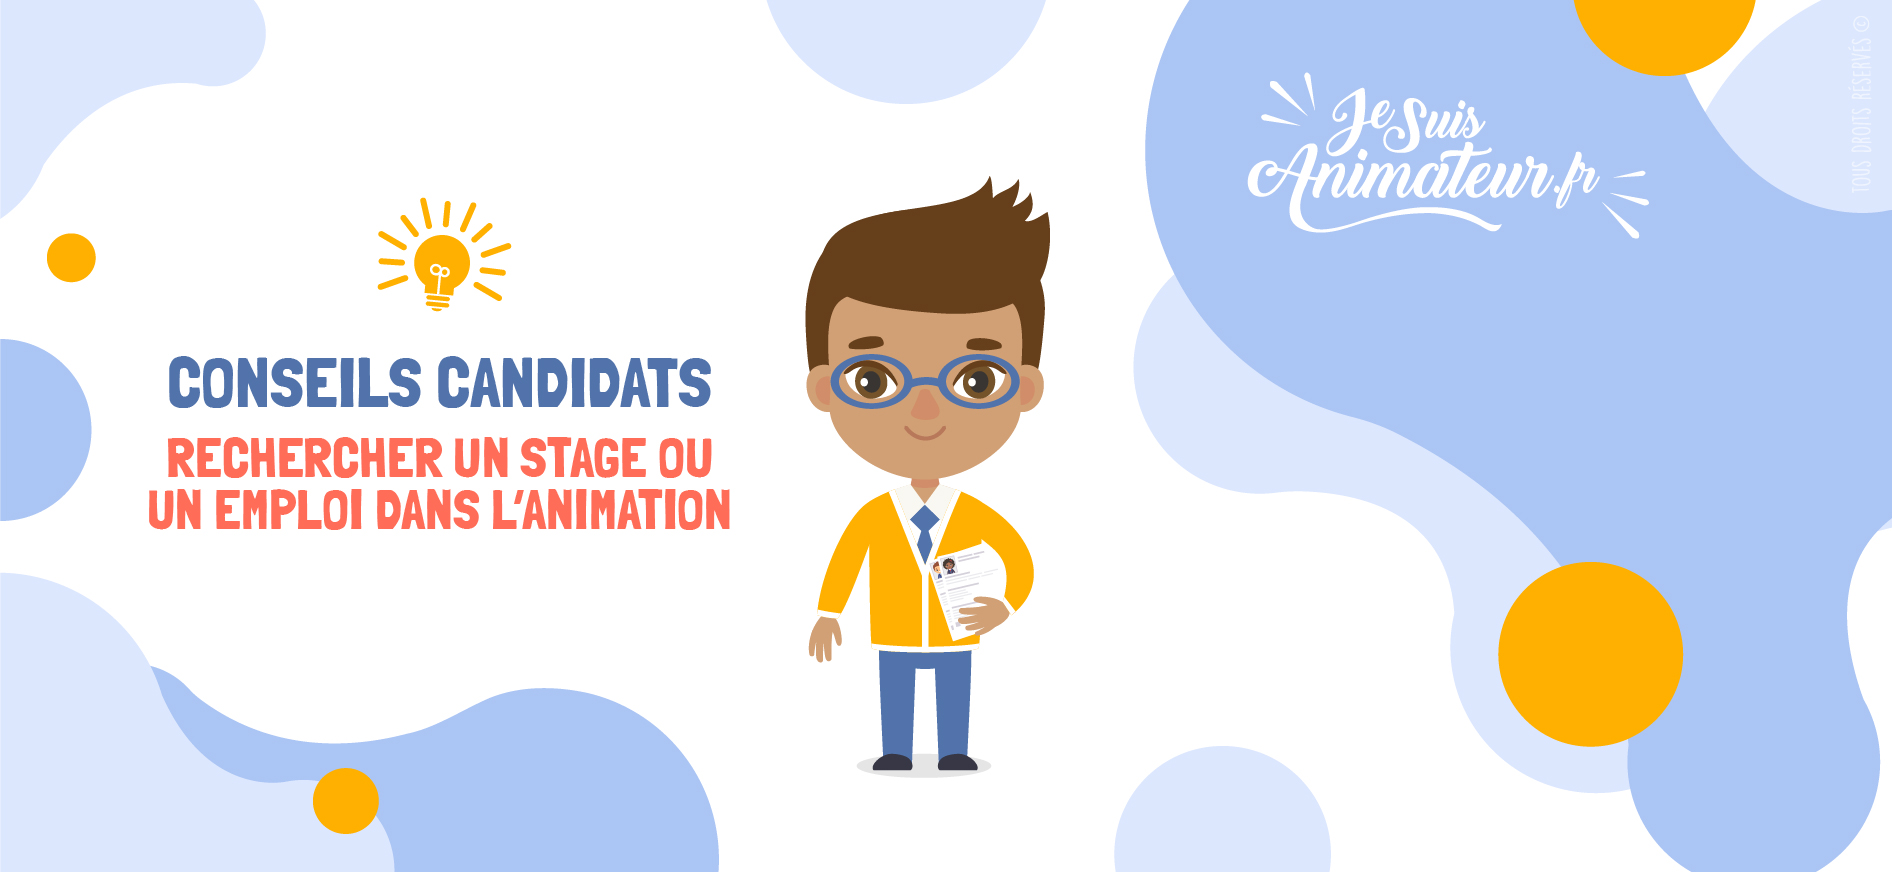 Conseils candidats | JeSuisAnimateur.fr